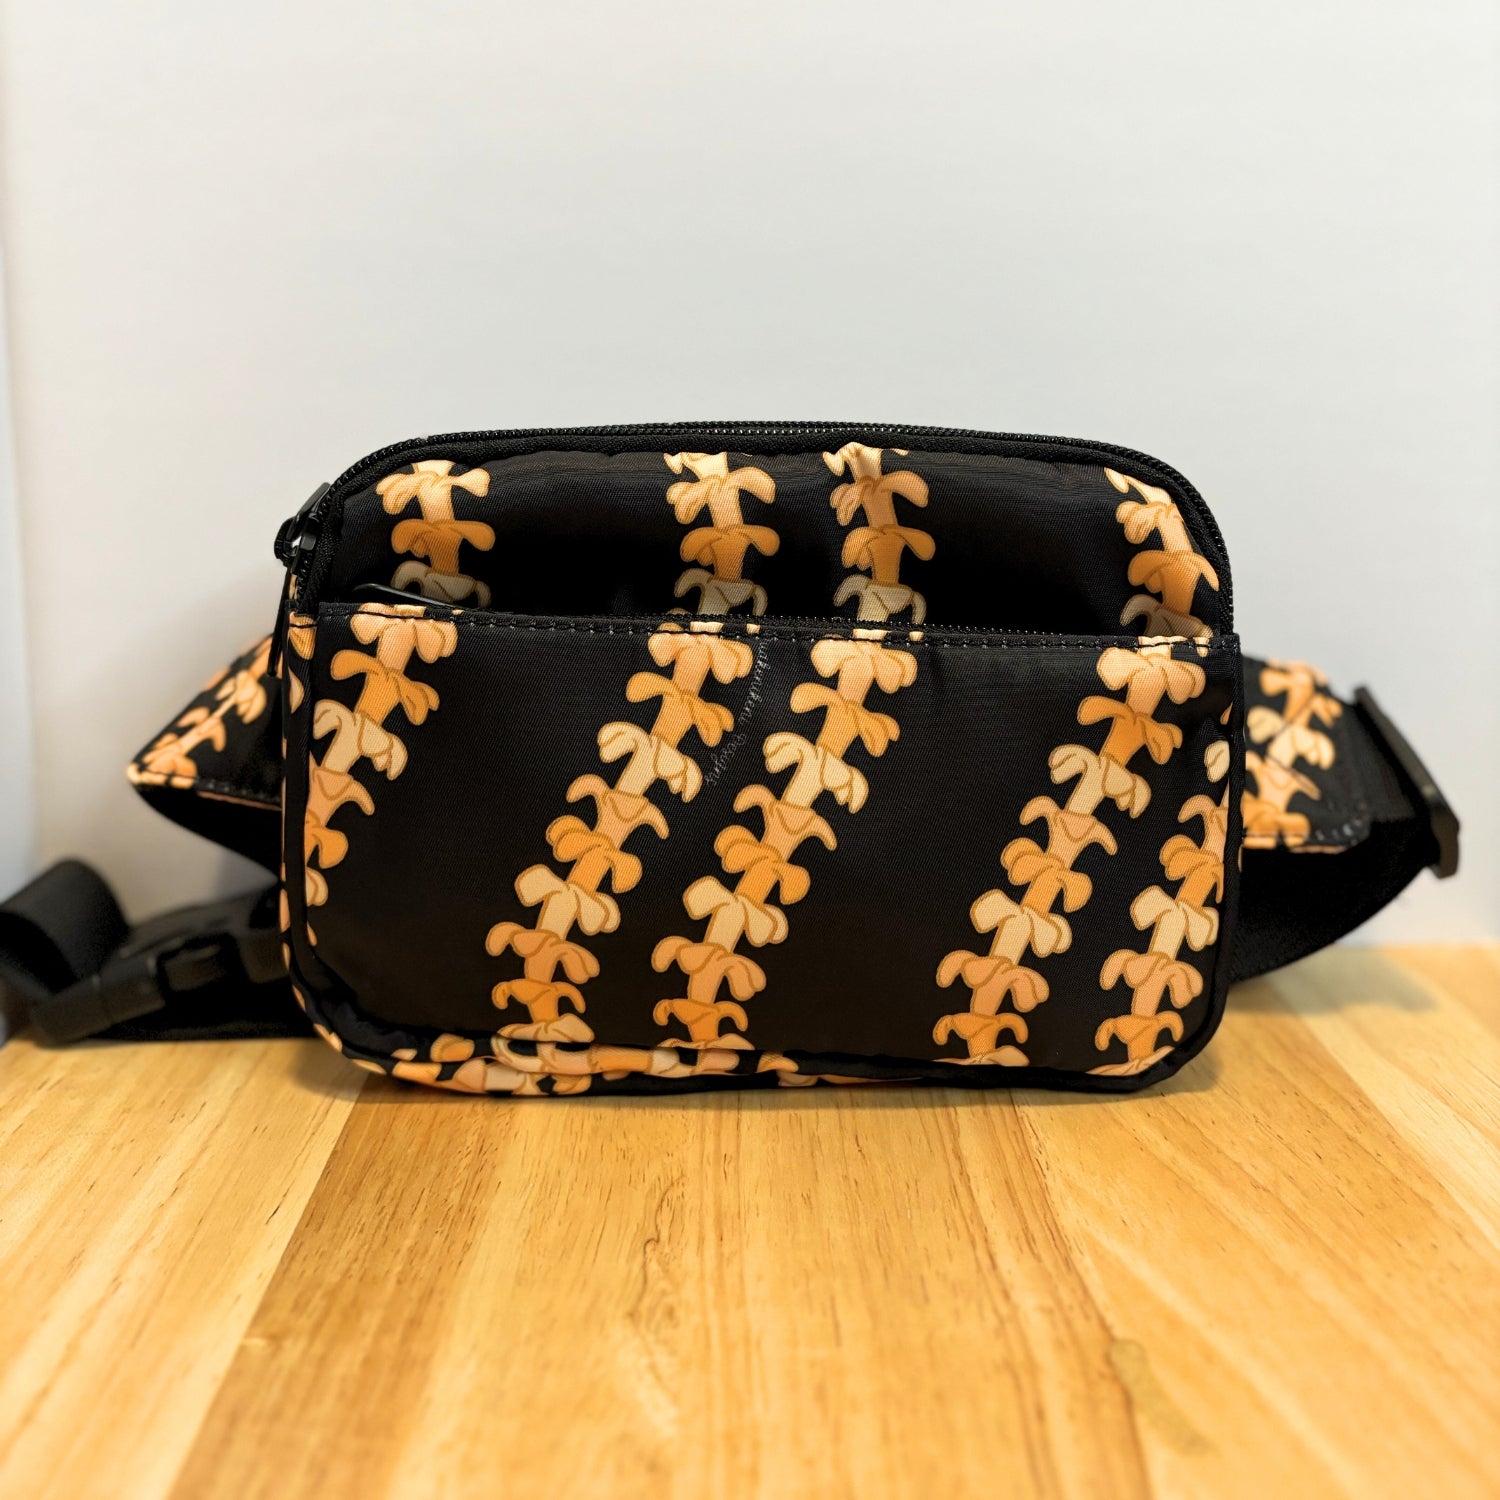 fanny pack, waist bag, belt bag, chest bag, hip pack, crossbody in orange pua kenikeni lei on black from Puakenikeni Designs on table